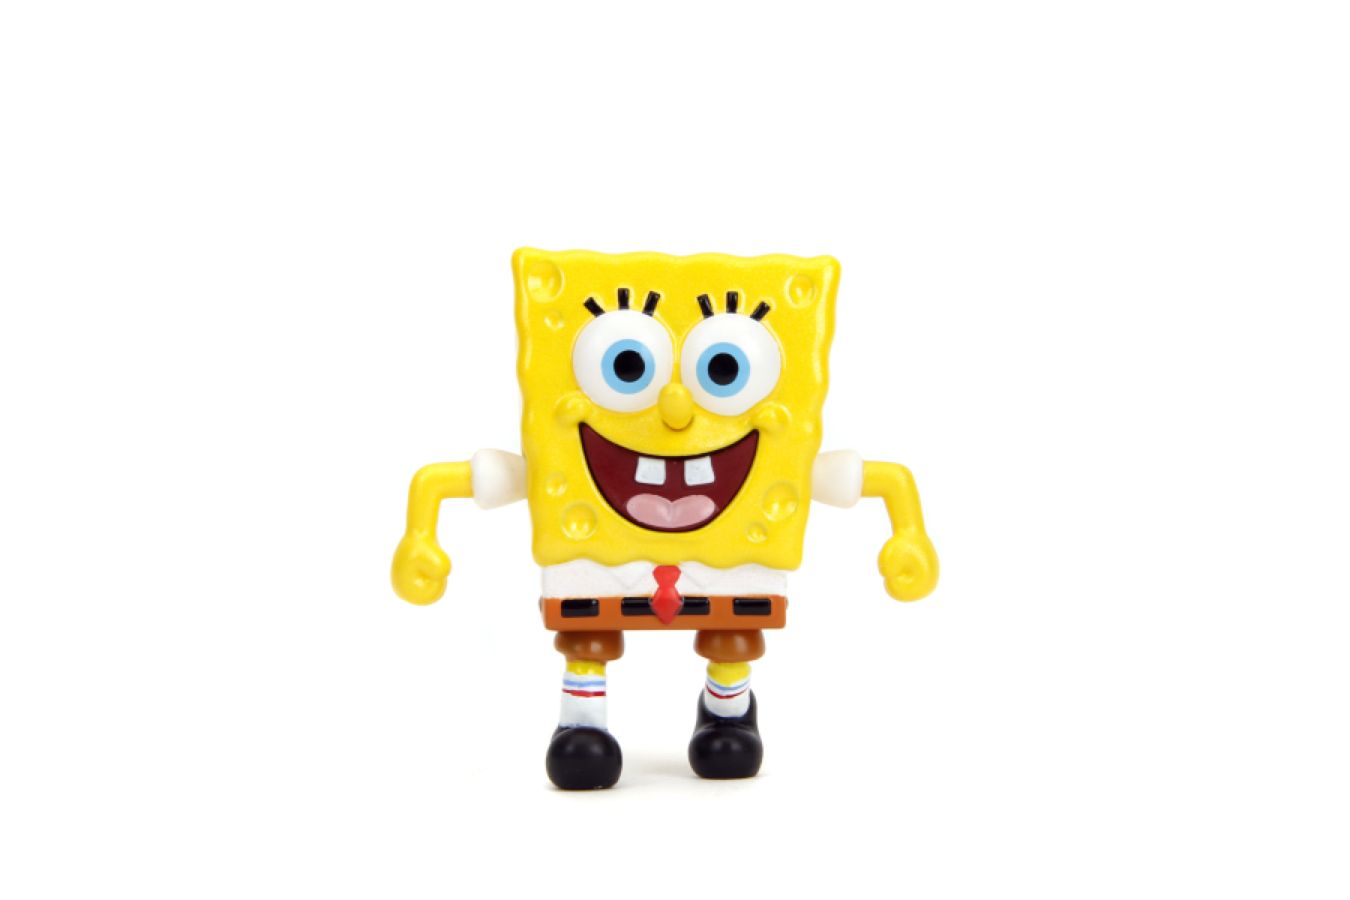 Spongebob Squarepants - 2.5" MetalFig Assortment (Display of 12)